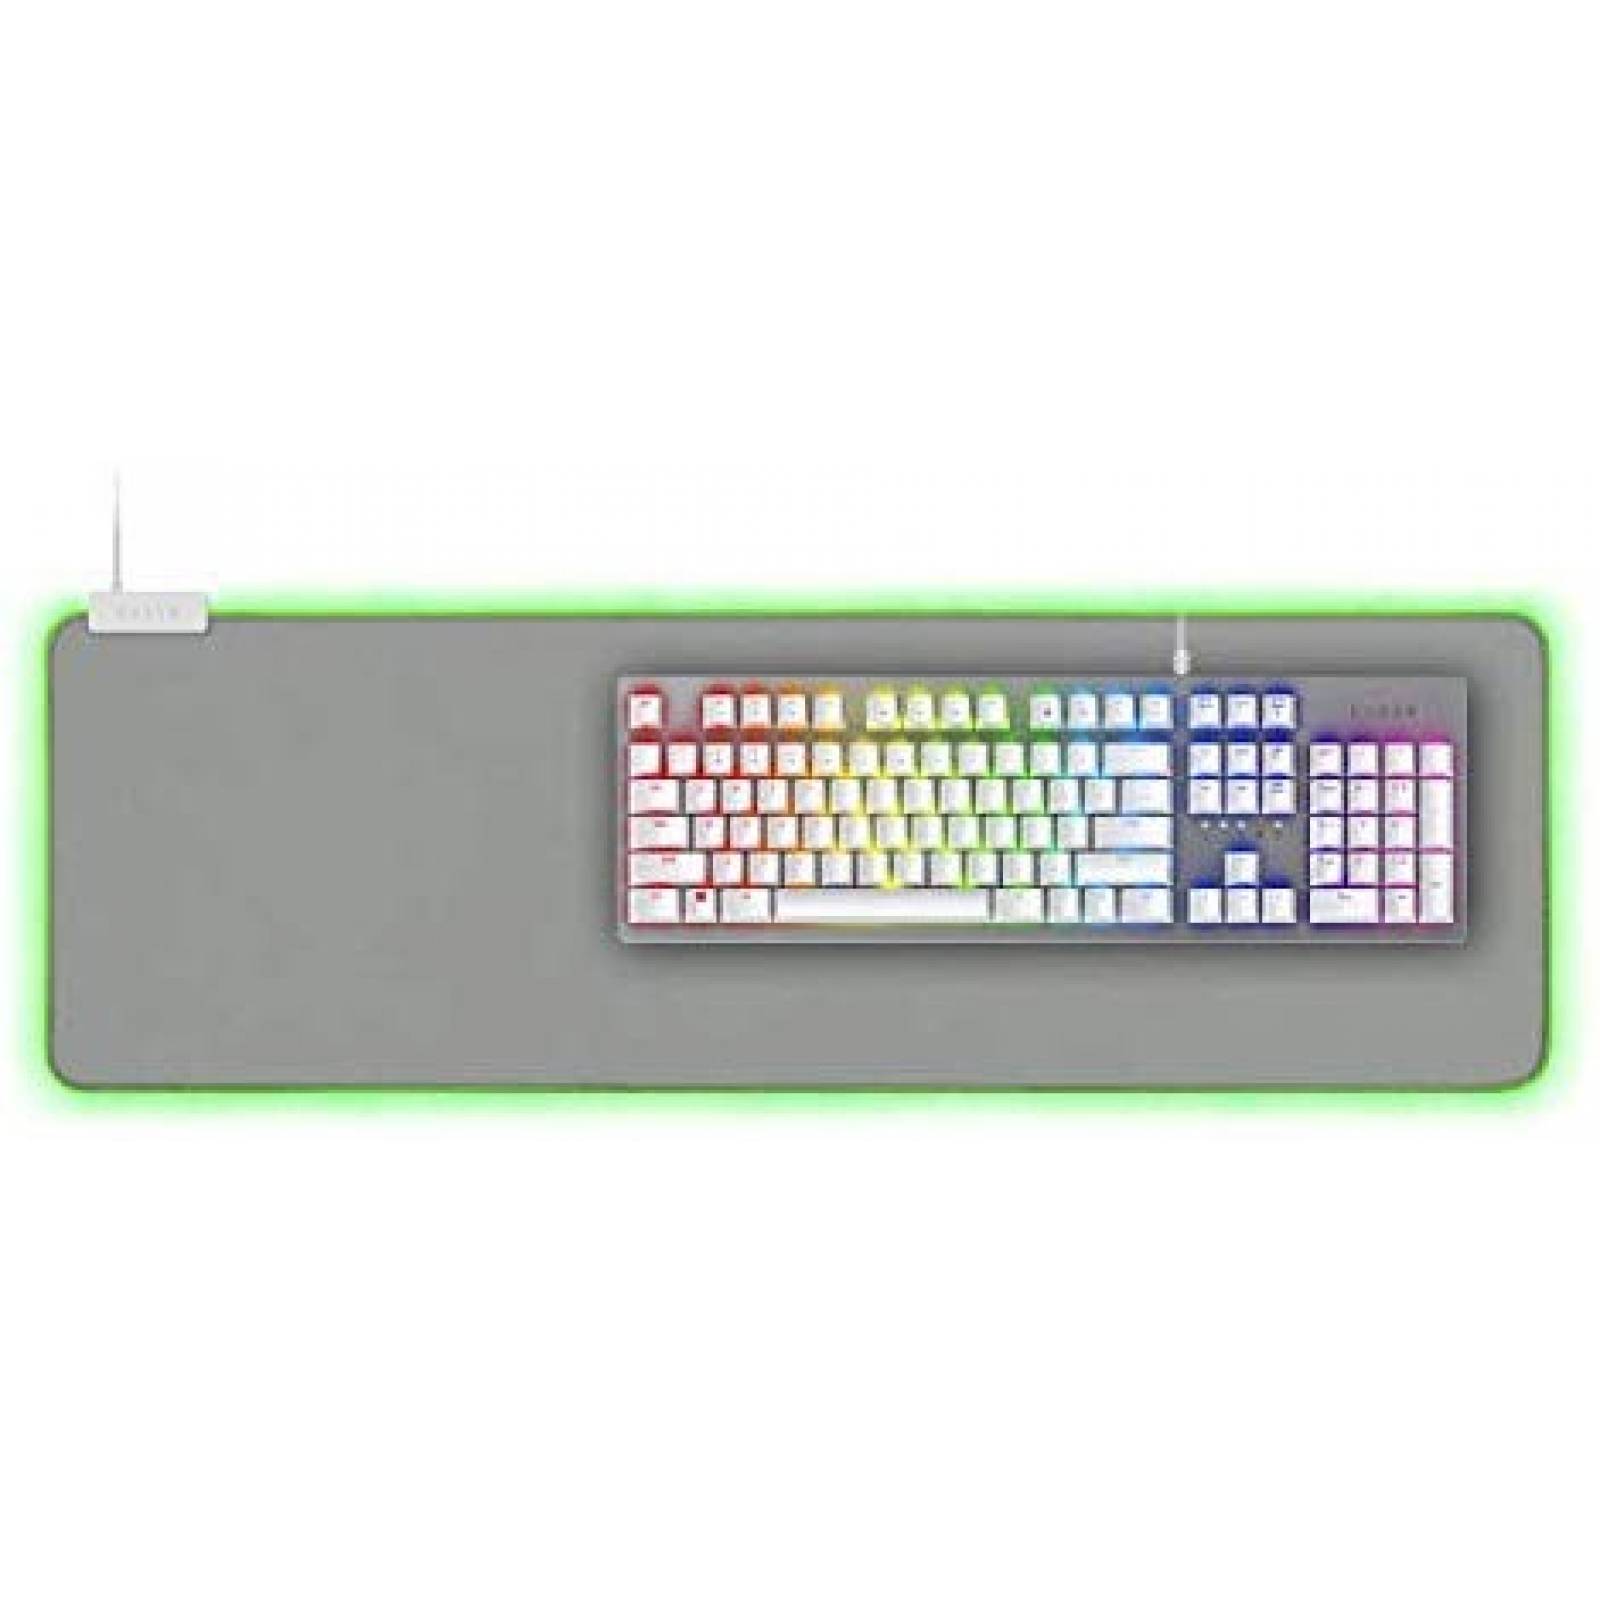 Combo de teclado Razer con almohadilla para teclado -Blanco